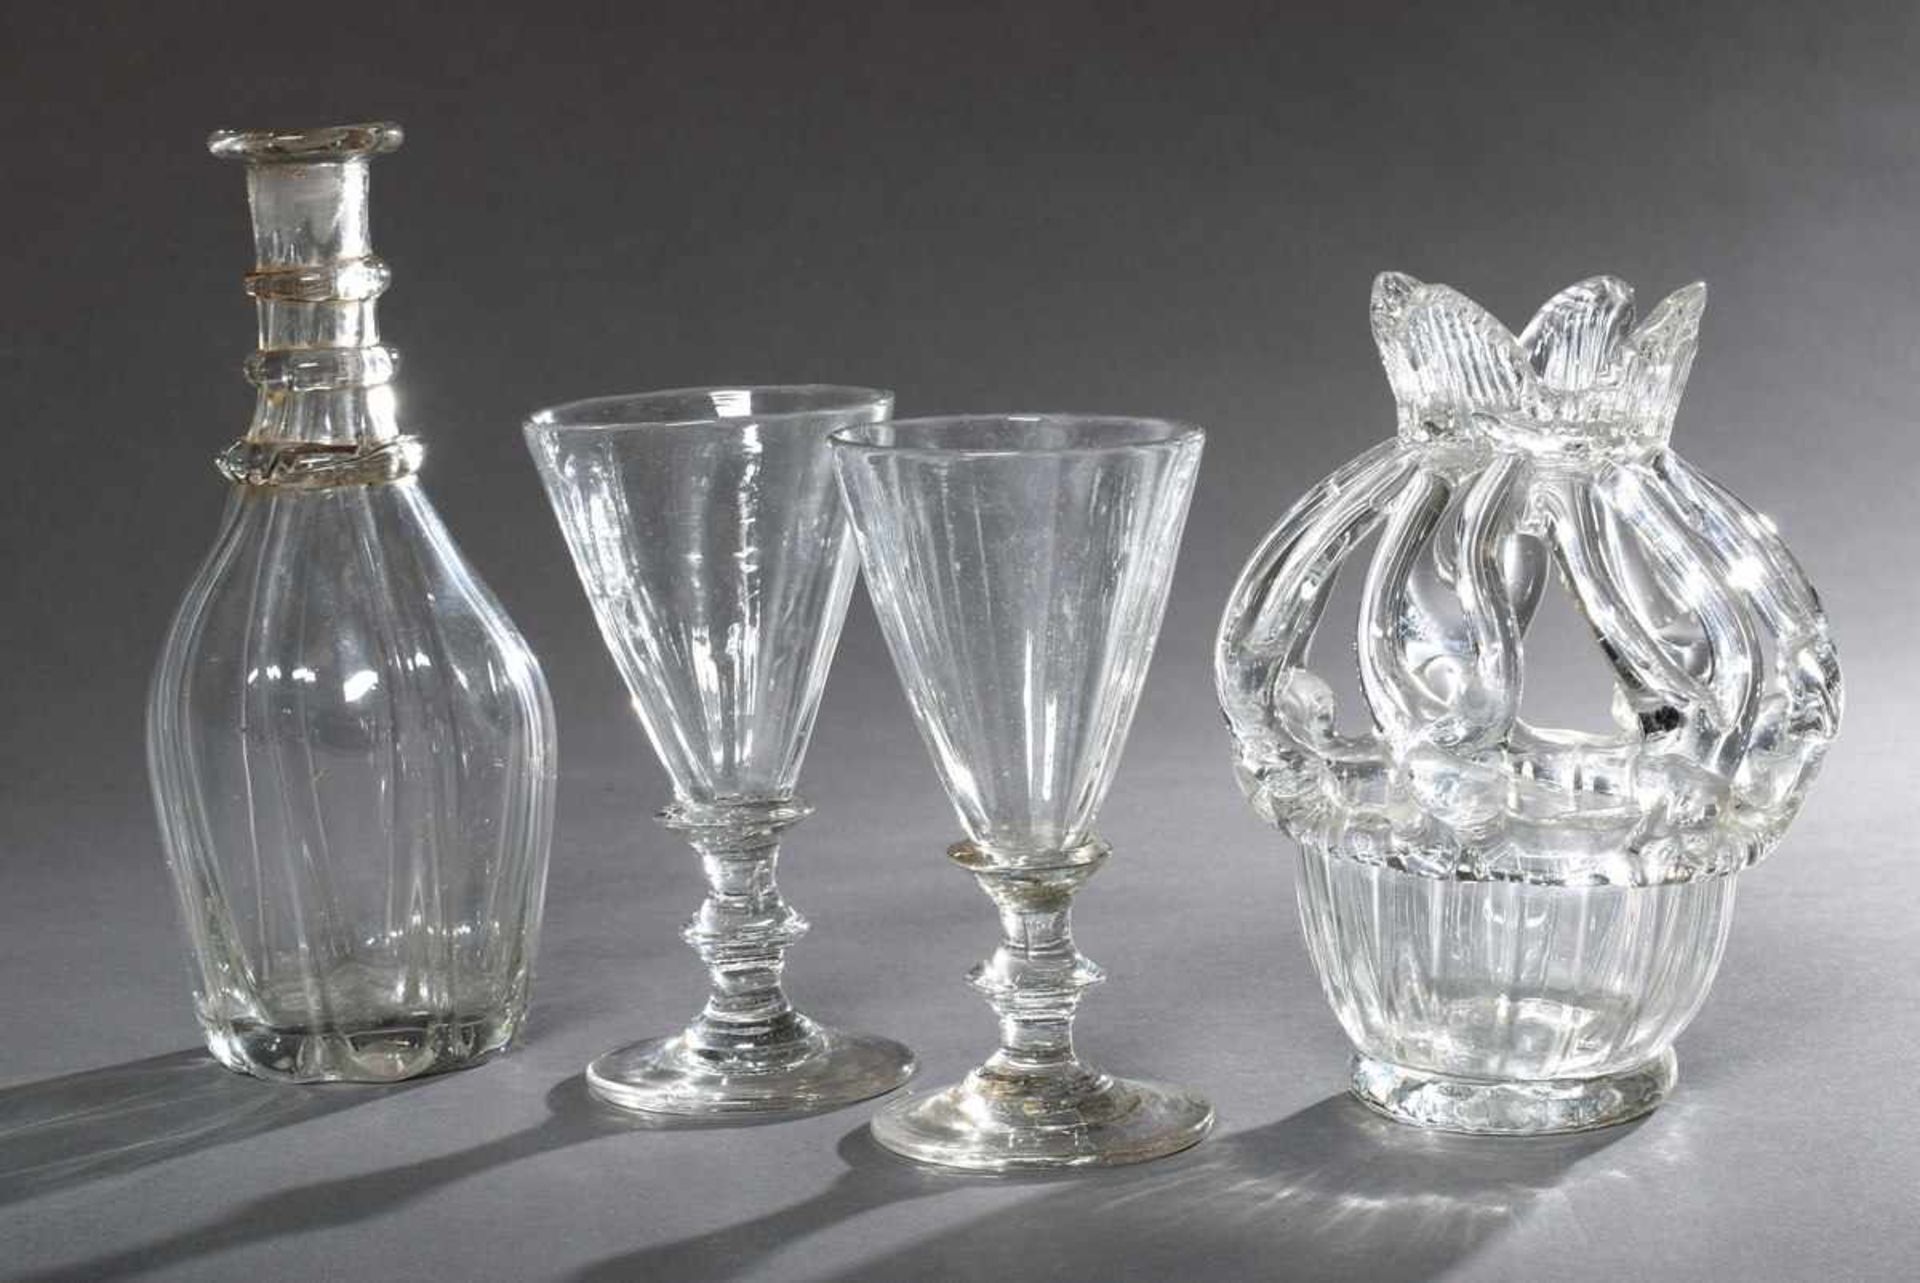 4 Diverse Teile antikes in die Form geblasenes und gezogenes Glas: Karaffe (Stopfen fehlt), 2 Gläser